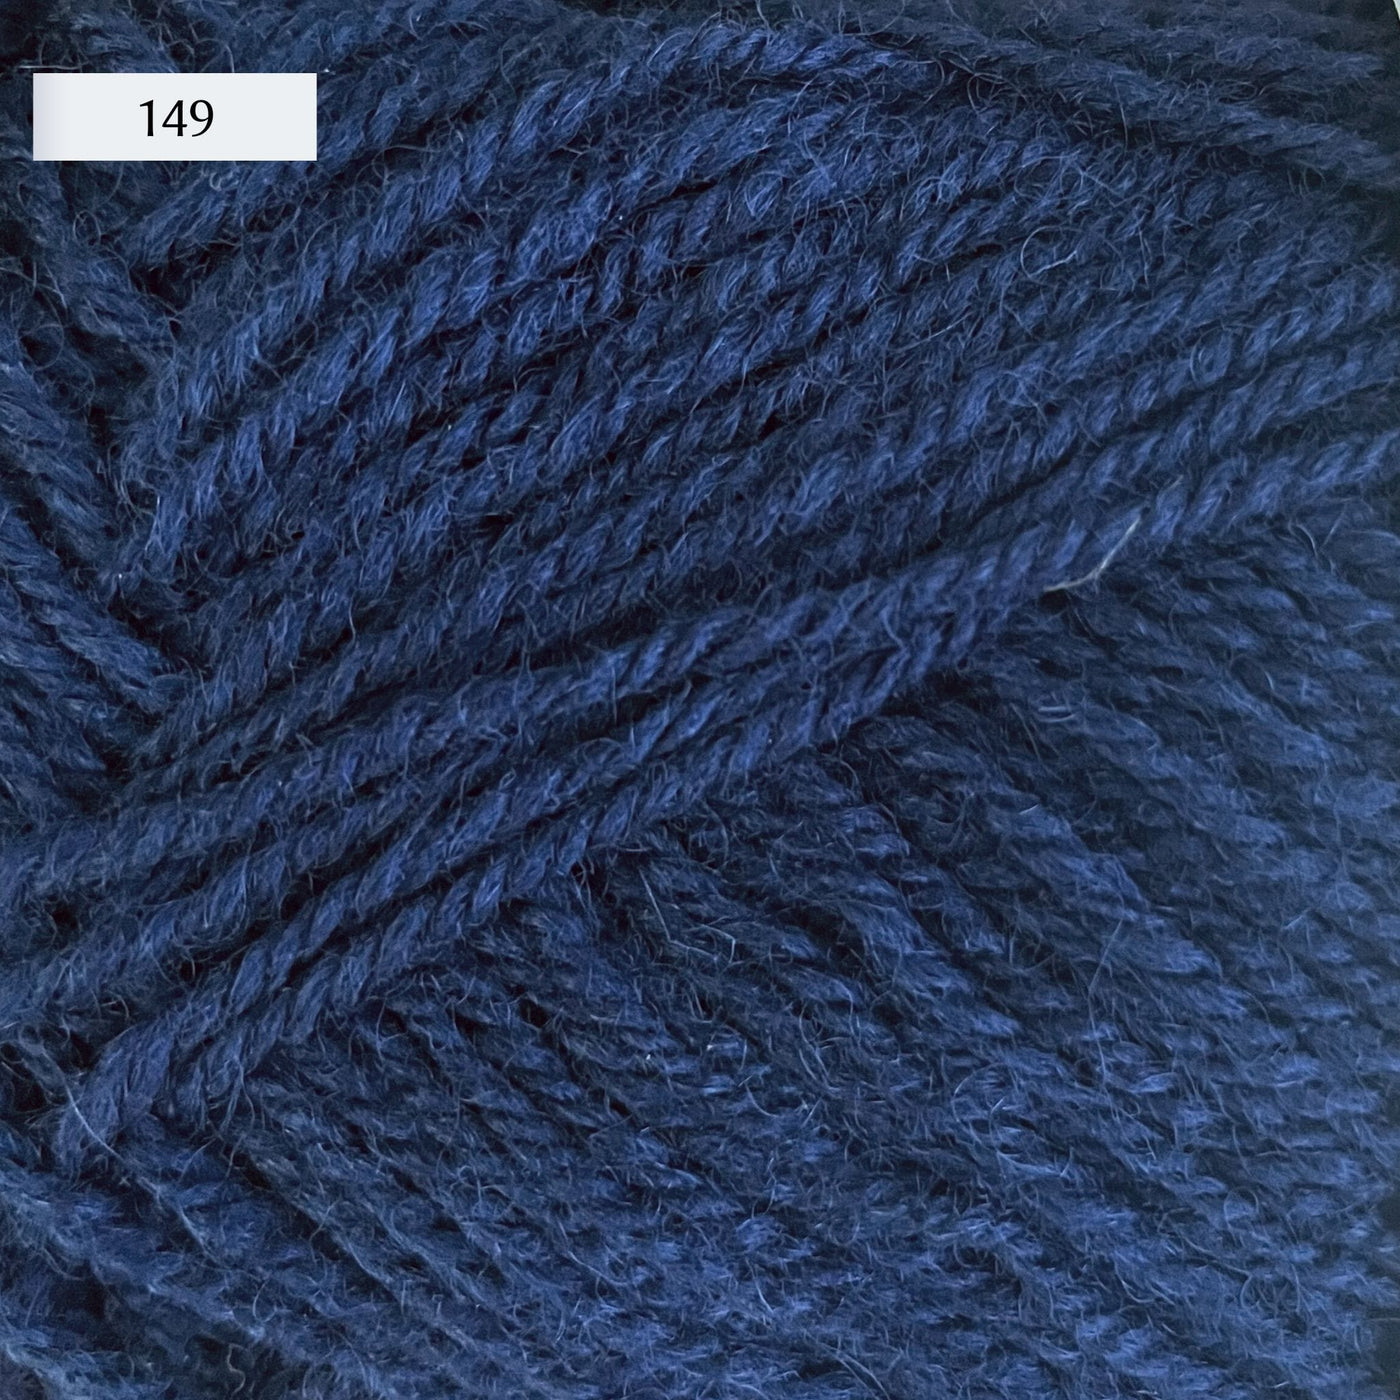 Rauma Strikkegarn, DK weight yarn, in color 149, dusty mid-tone denim blue